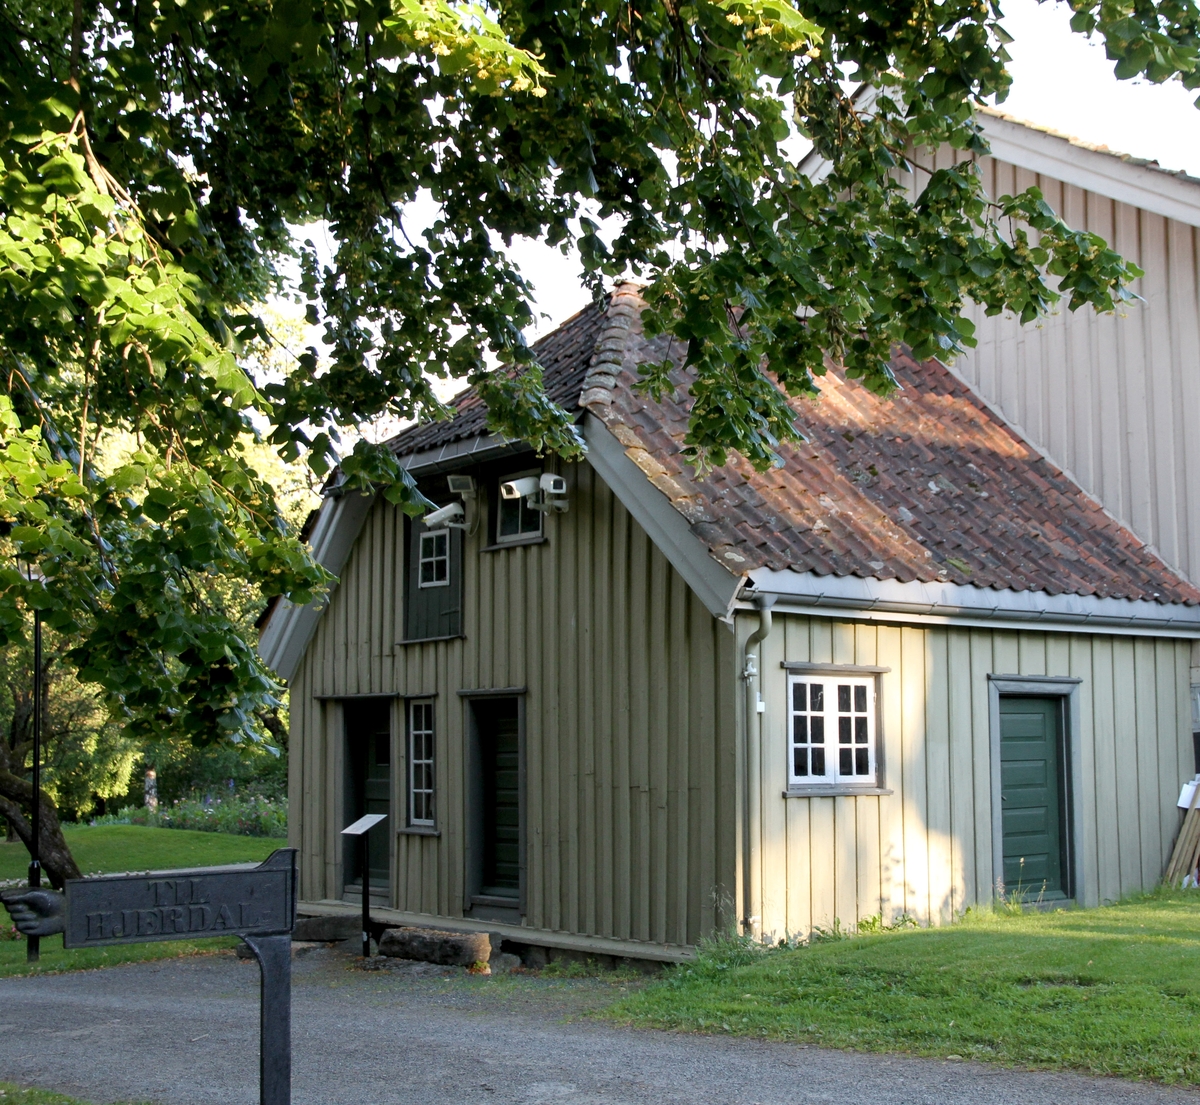 Butikkbygning fra Brevik, flyttet og gjenreist på museet 1912. Bygget omkring år 1800. Bindingsverk, panelt, høyt halvvalmet tak. Kledt med lektepanel, som har vært den vanlige paneltypen i Brevik. Inneholder butikklokale, boder og loft. Plassert inntil vestre uthusfløy, Søndre Brekke gård i Brekkeparken.